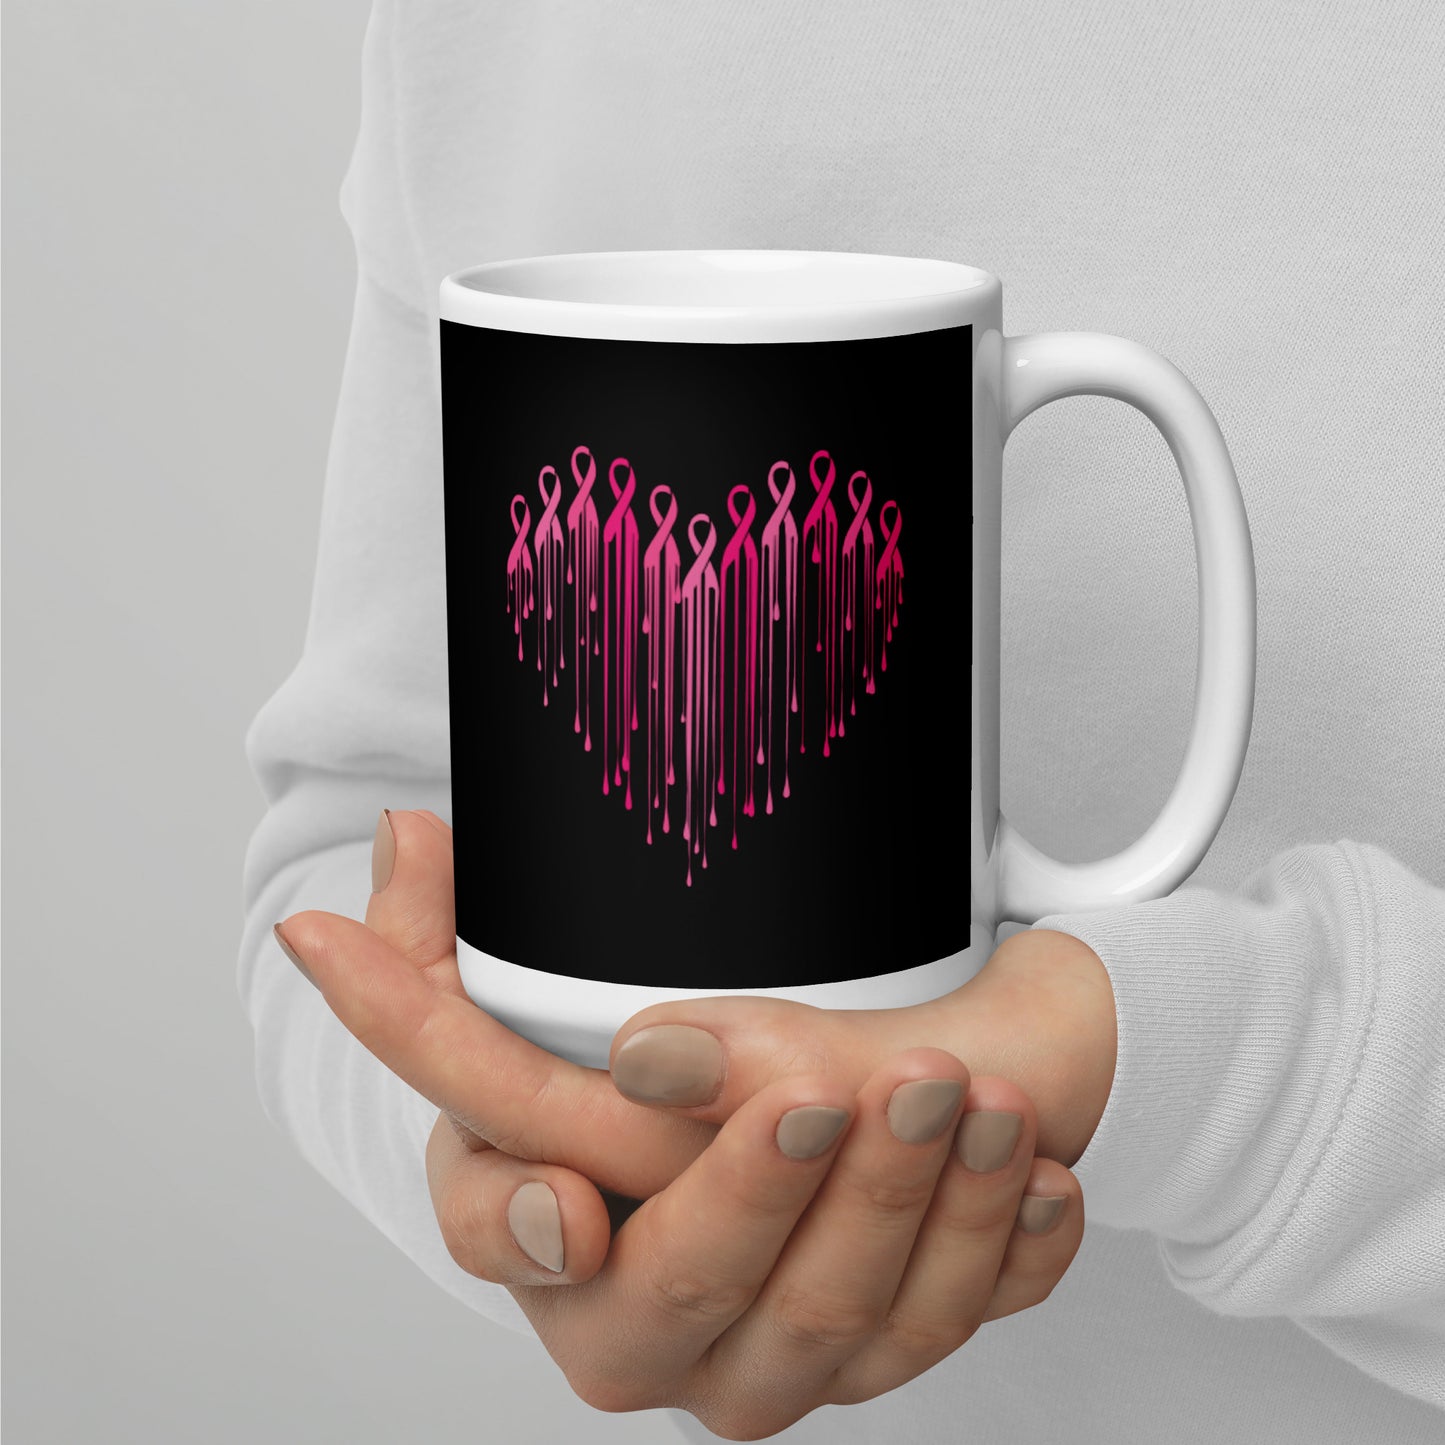 Painted Heart of Pink Ribbons Mug